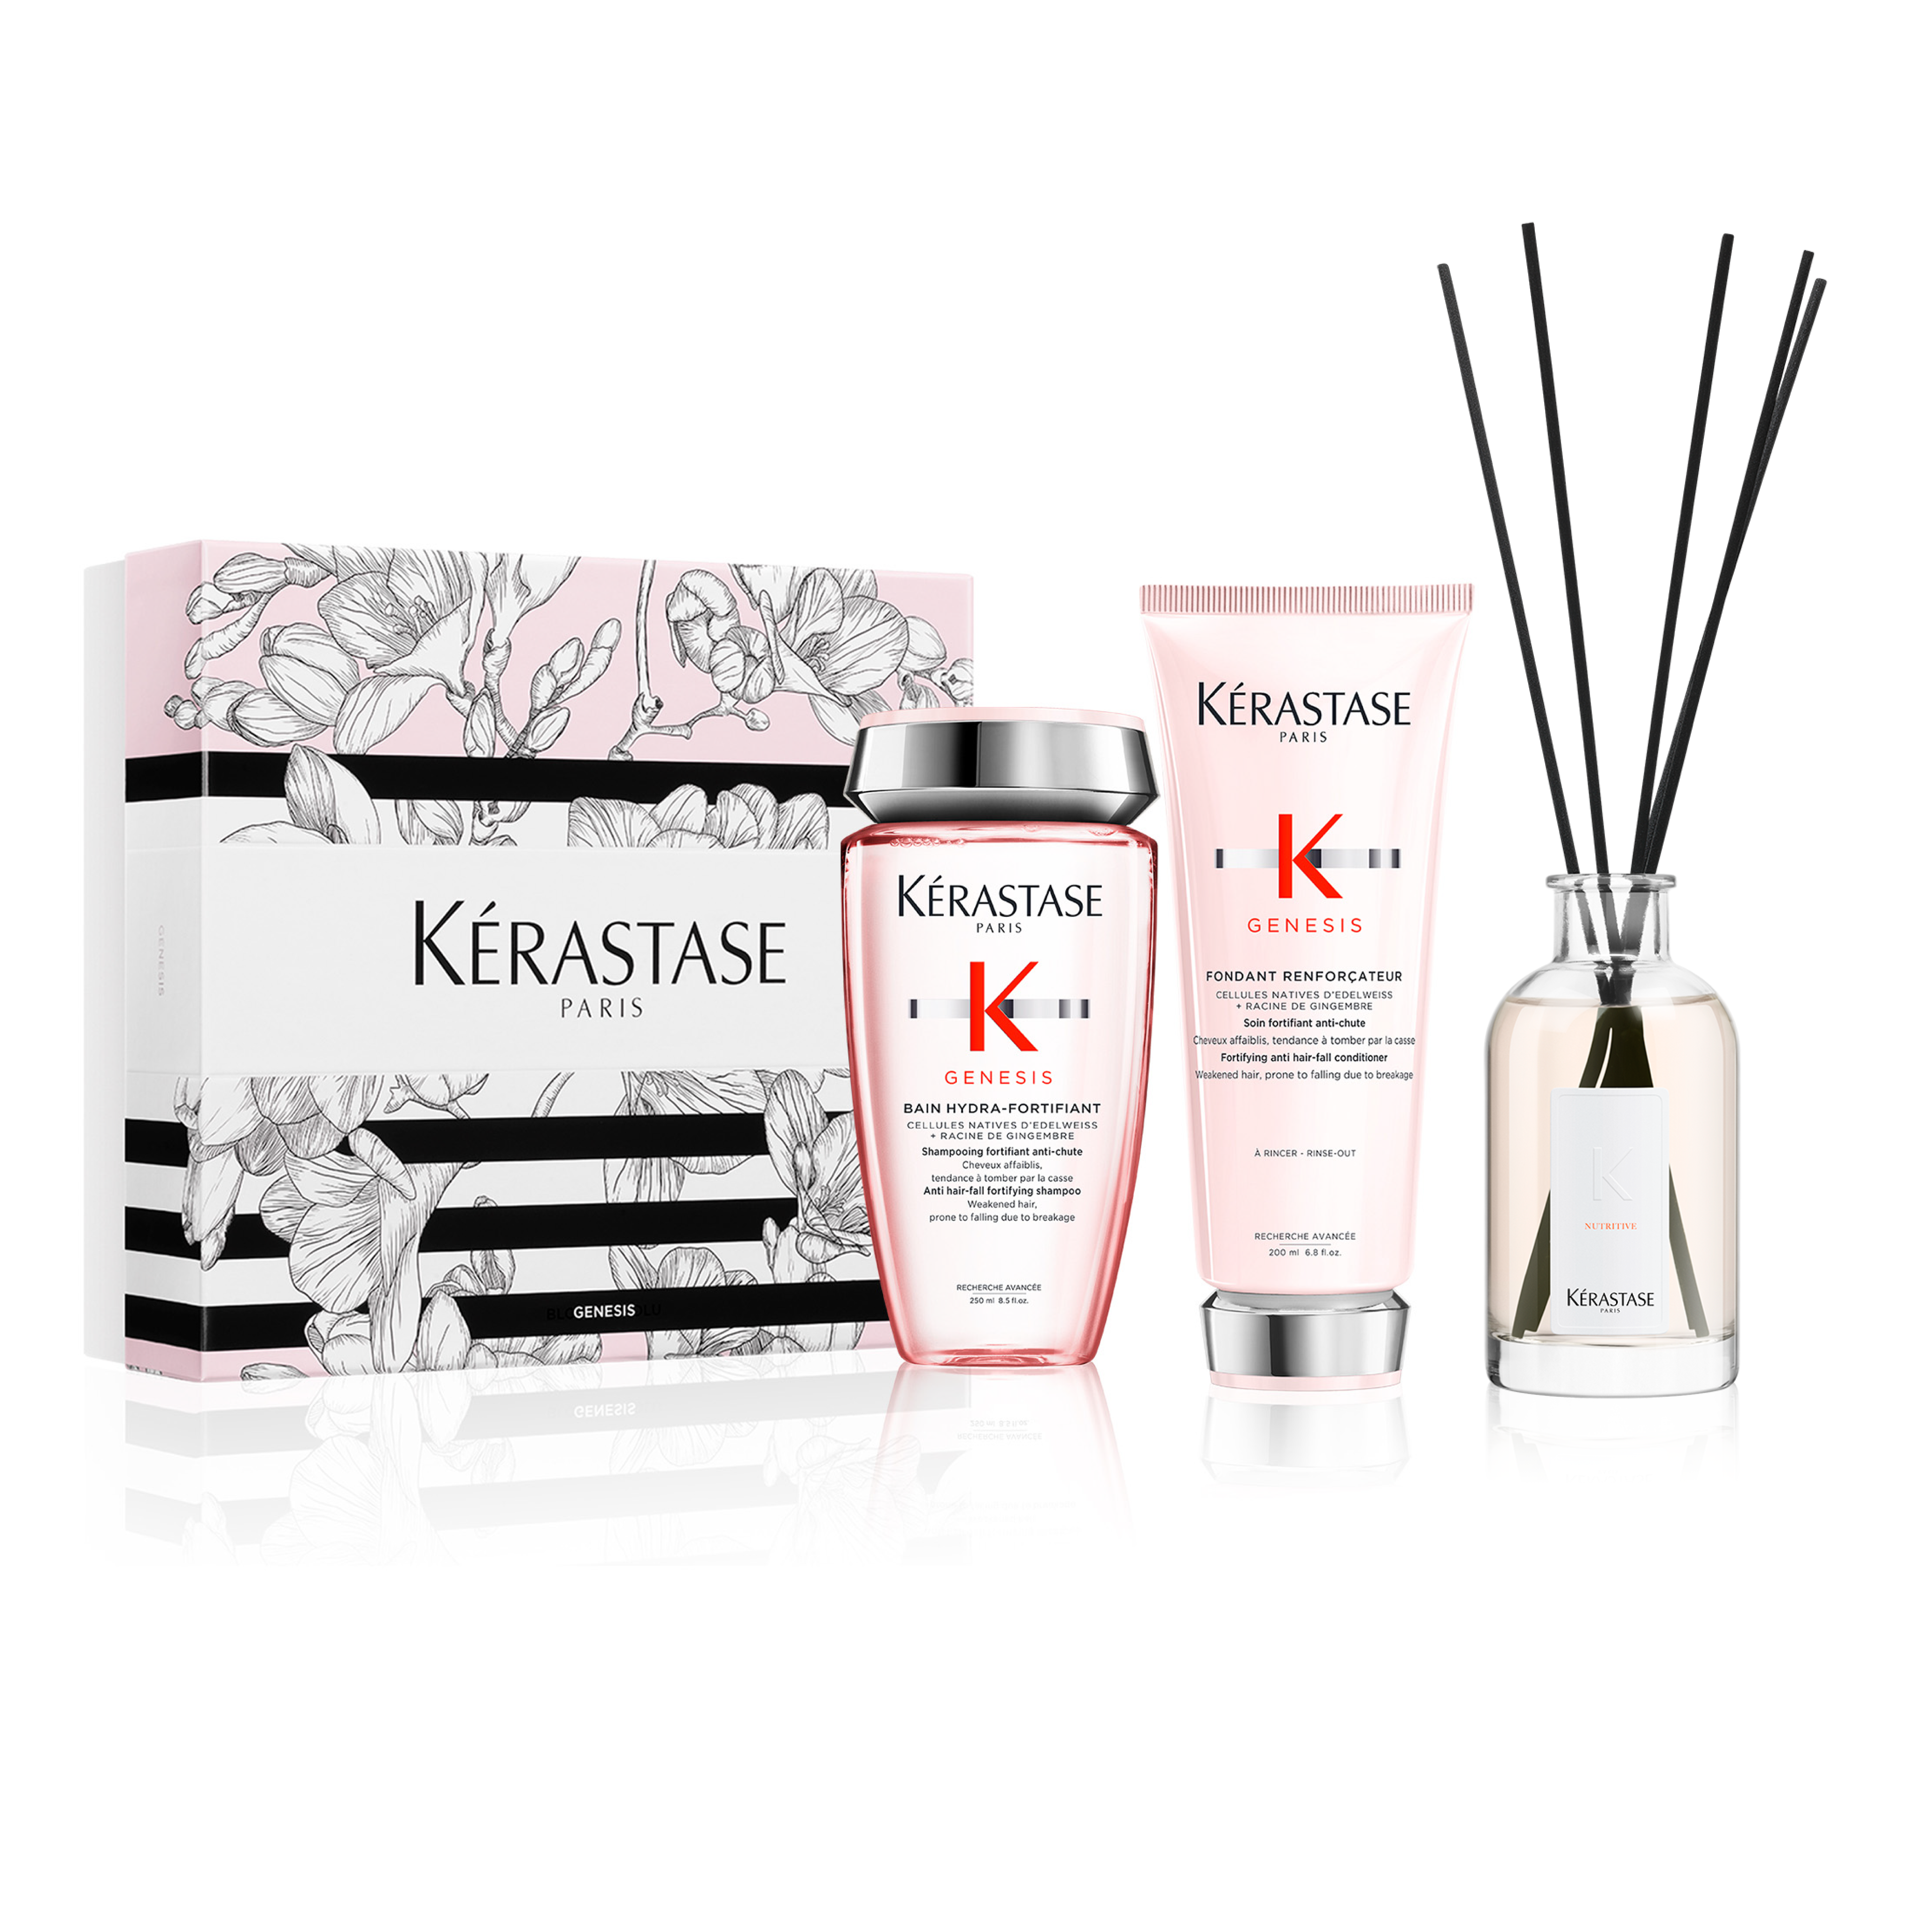 Kérastase Coffret Gift Set with Home Fragrance Diffuser